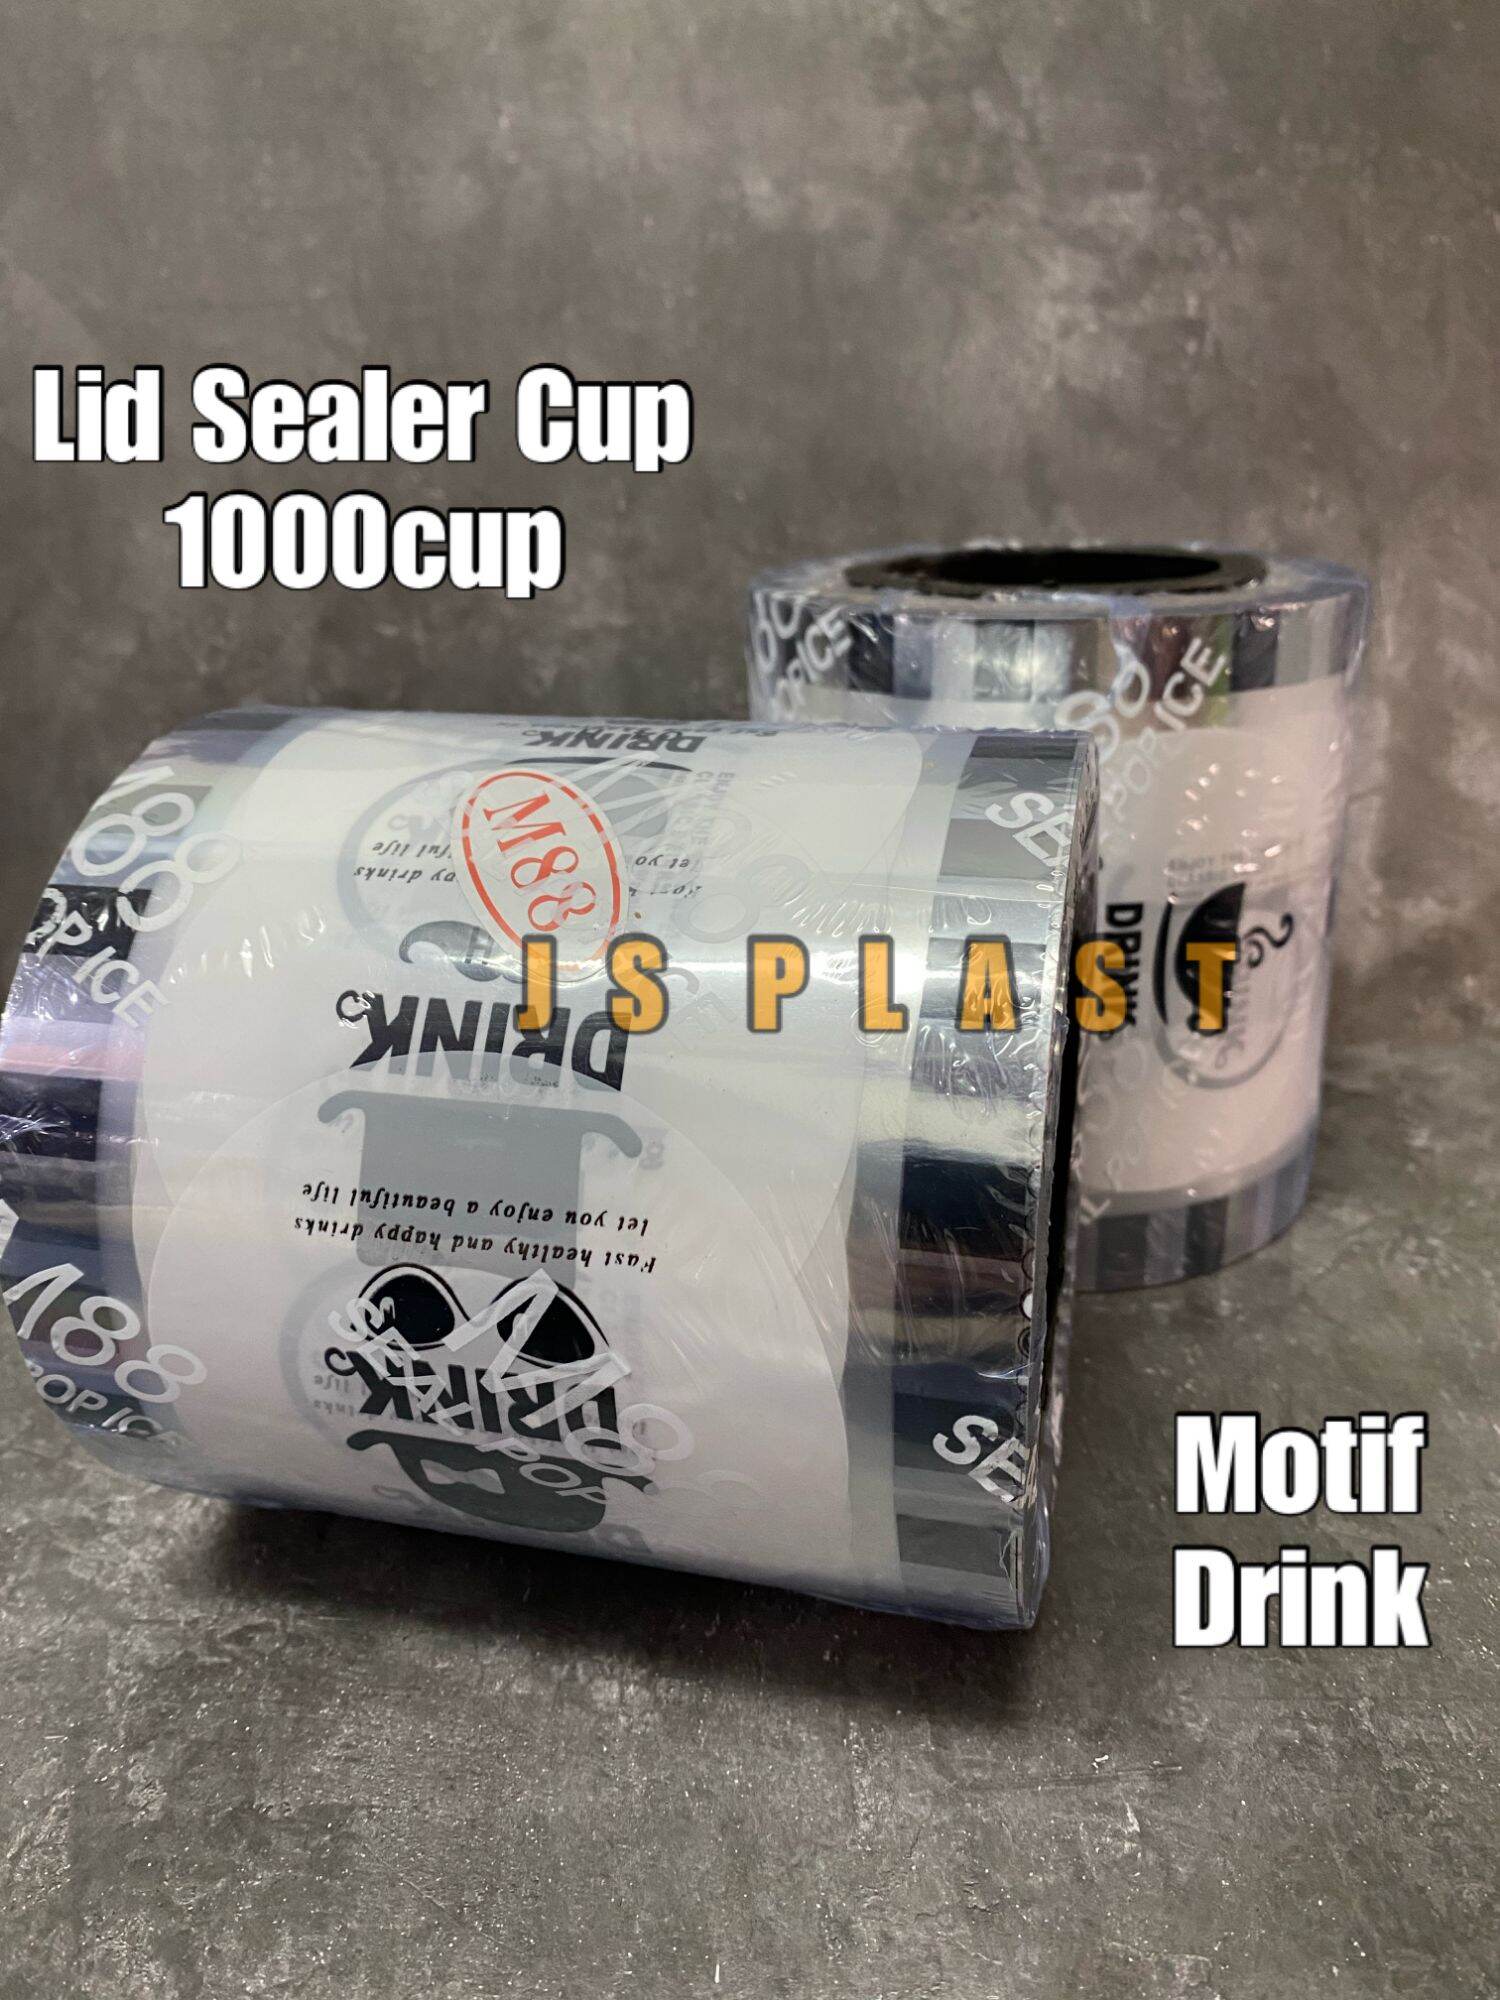 Plastik Lid Sealer Cup Drink 1000cup Seal Cup Tutup Gelas Plastik Segel Gelas Plastik 1417